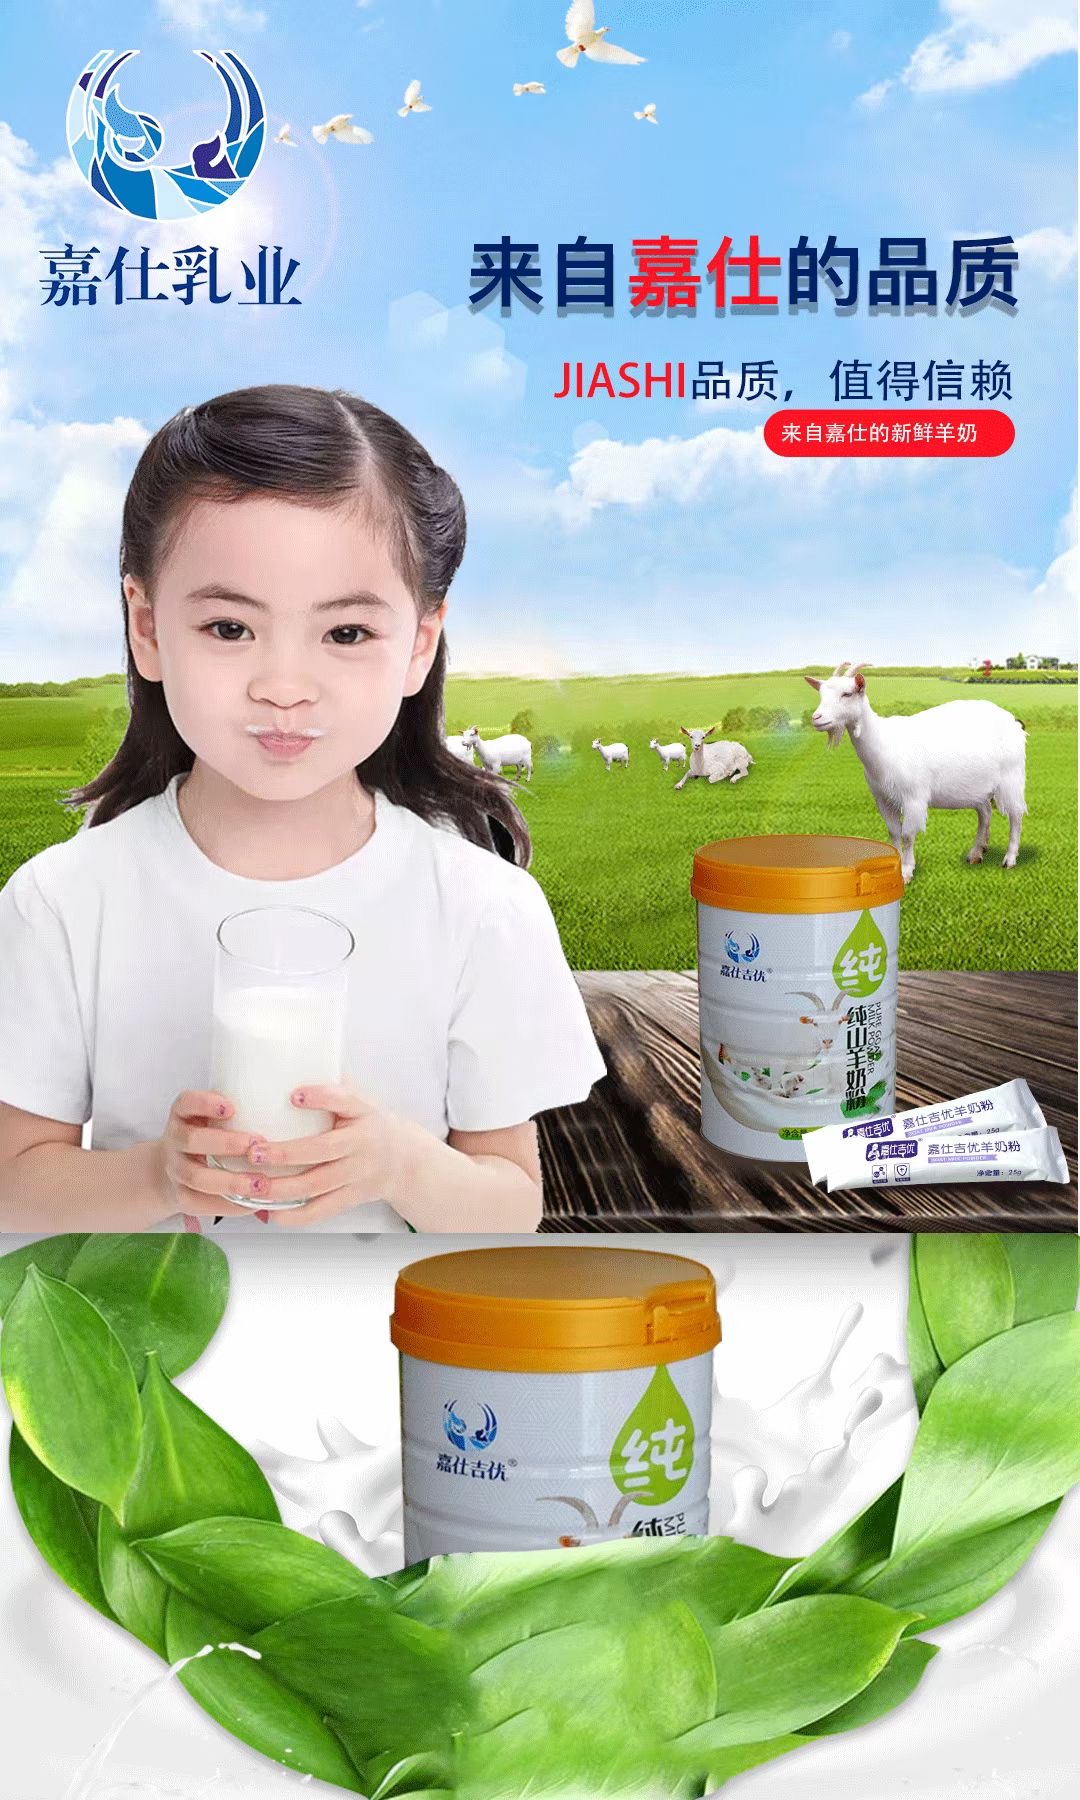 羊奶粉产品排行,羊奶粉产品大全,羊奶粉品牌批发进货-中婴羊奶粉网